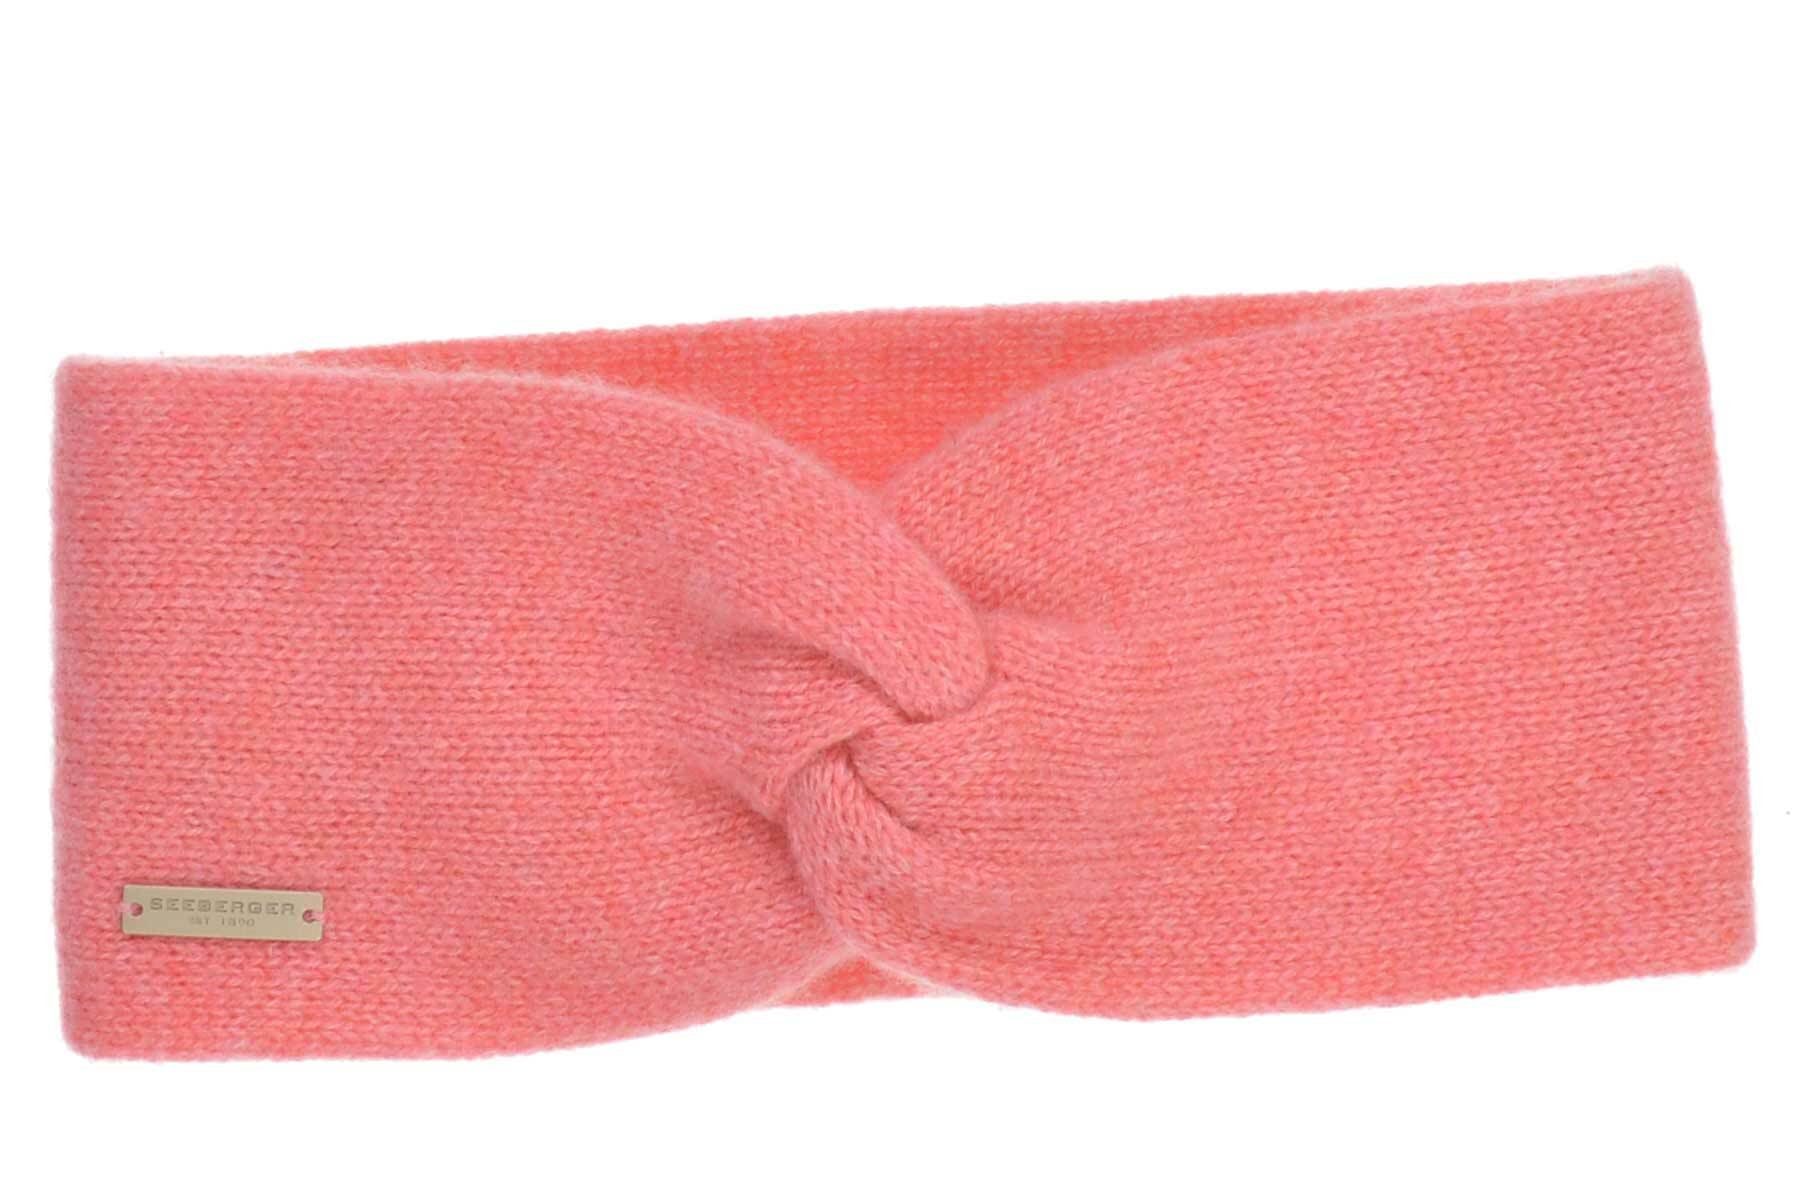 Seeberger Stirnband Cashmere Stirnband mit Knotendetail 17325-0 hummer | Stirnbänder